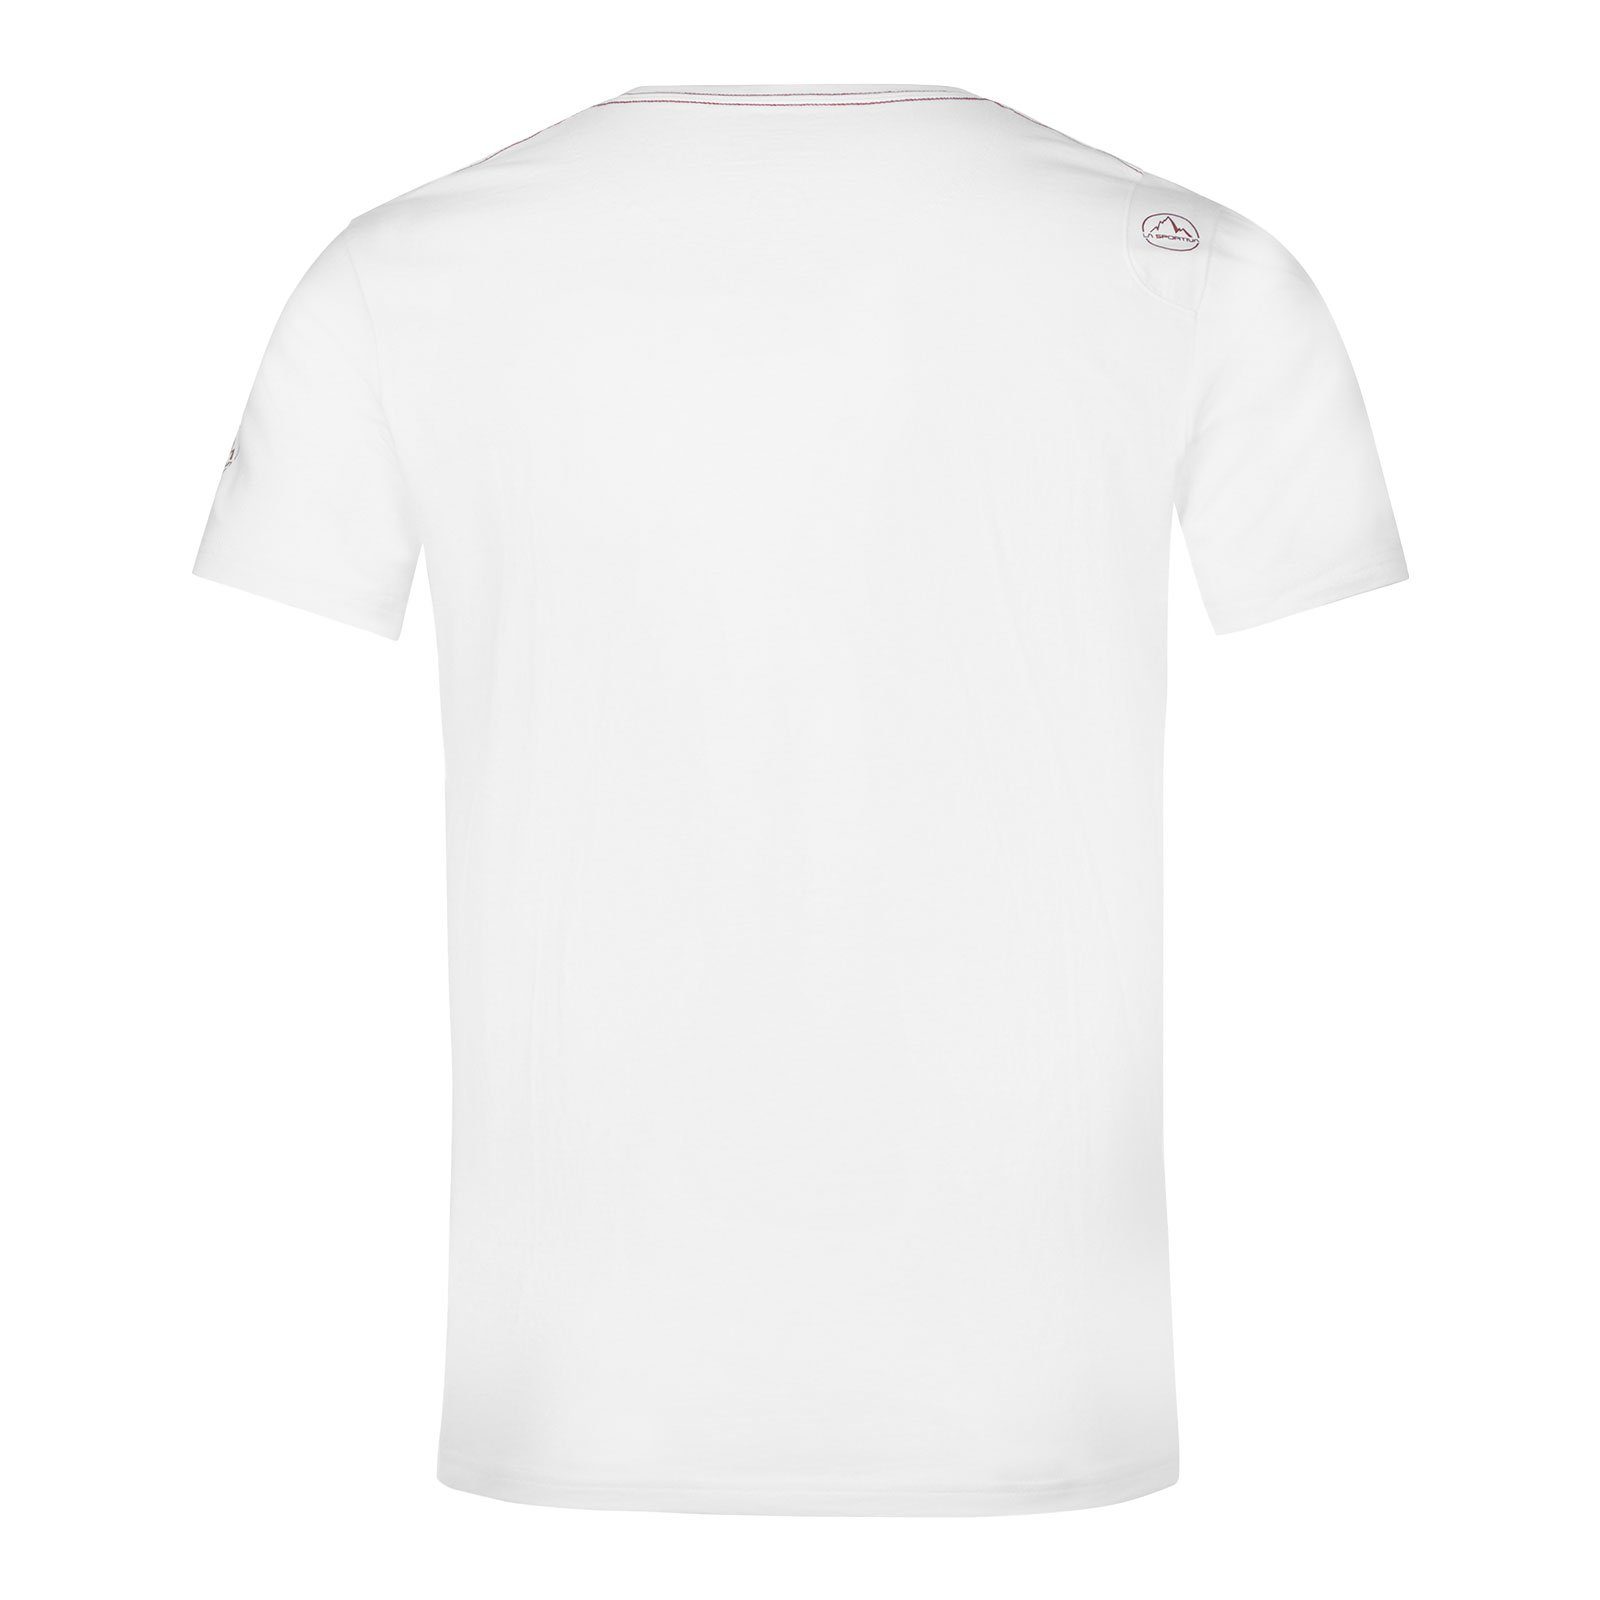 La Sportiva T-Shirt white 000320 100% M organischer aus Baumwolle Van / sangria